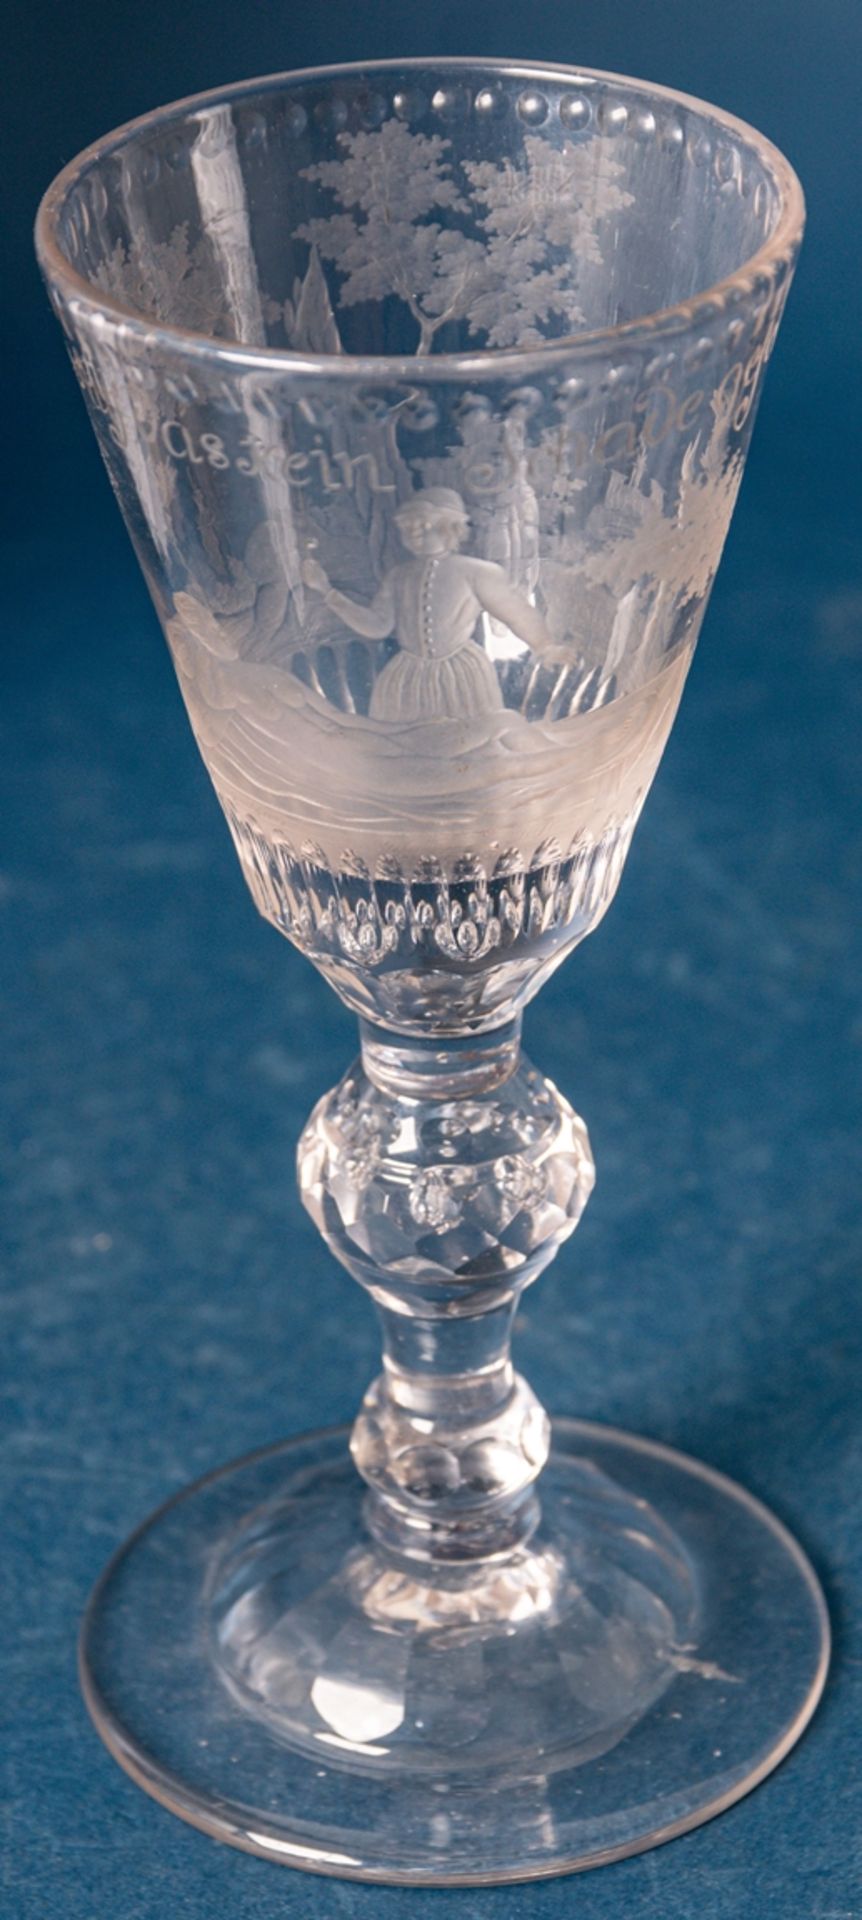 Barockes Pokalglas. Trichterförmige, konische Kuppa mit detailreichem figuralem